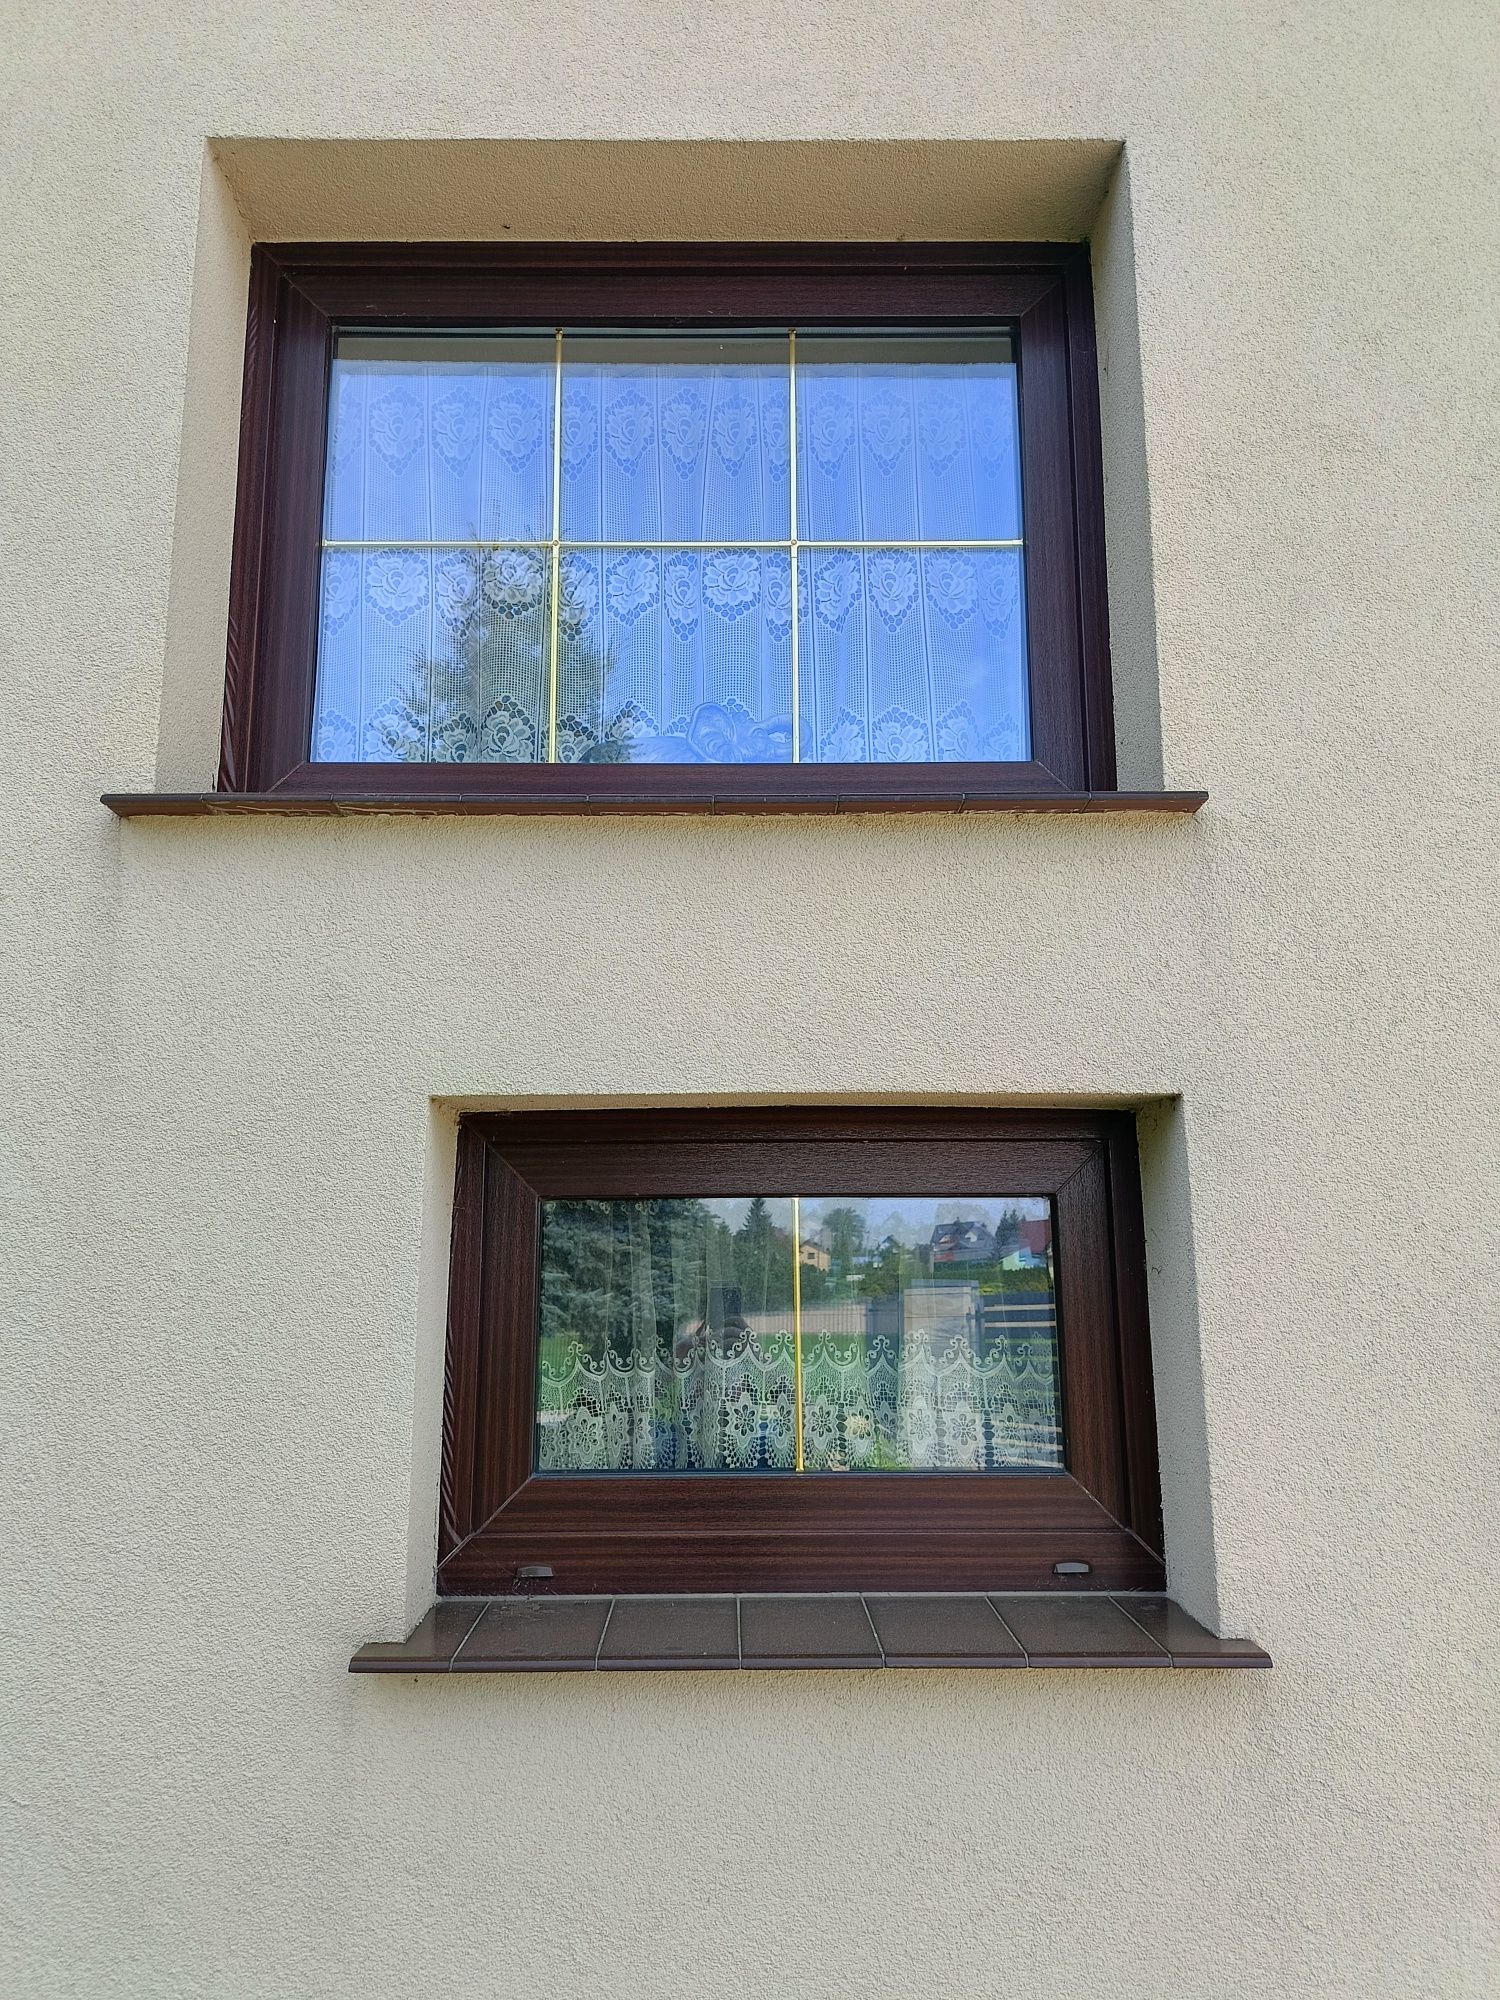 Okno z demontażu